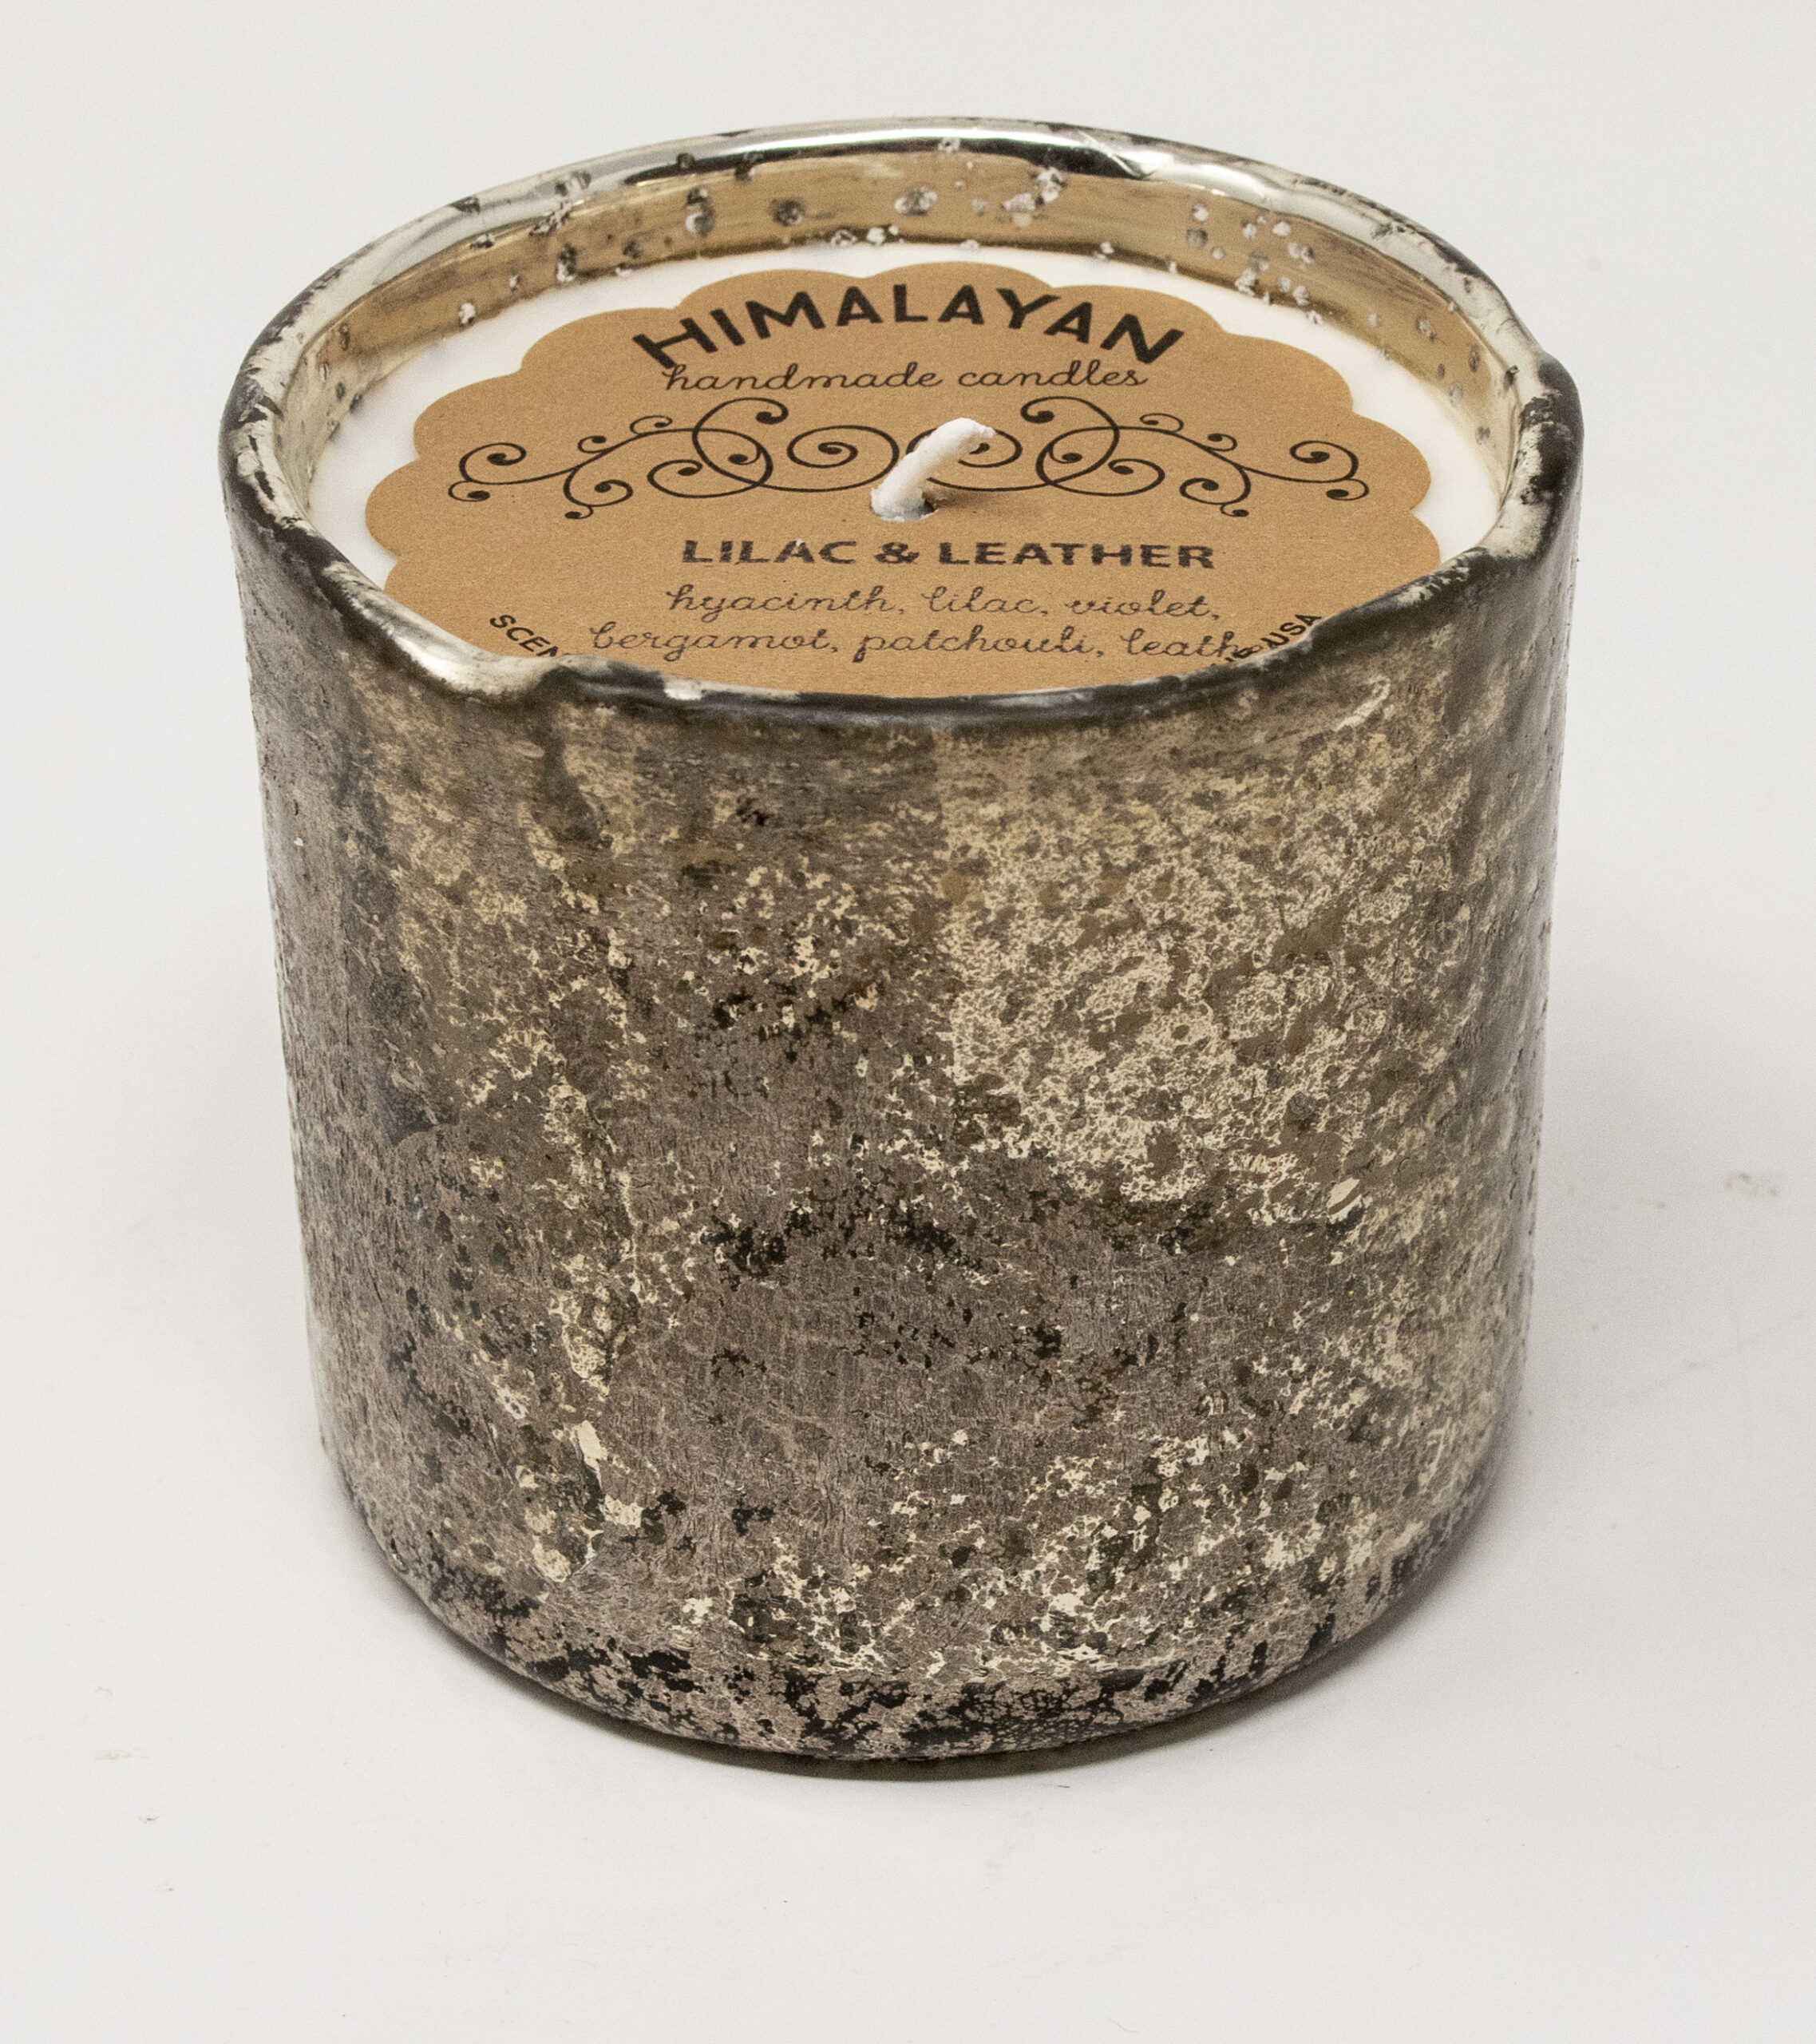 Large Curiosity Jar Candle 10 oz - Himalayan Trading Post